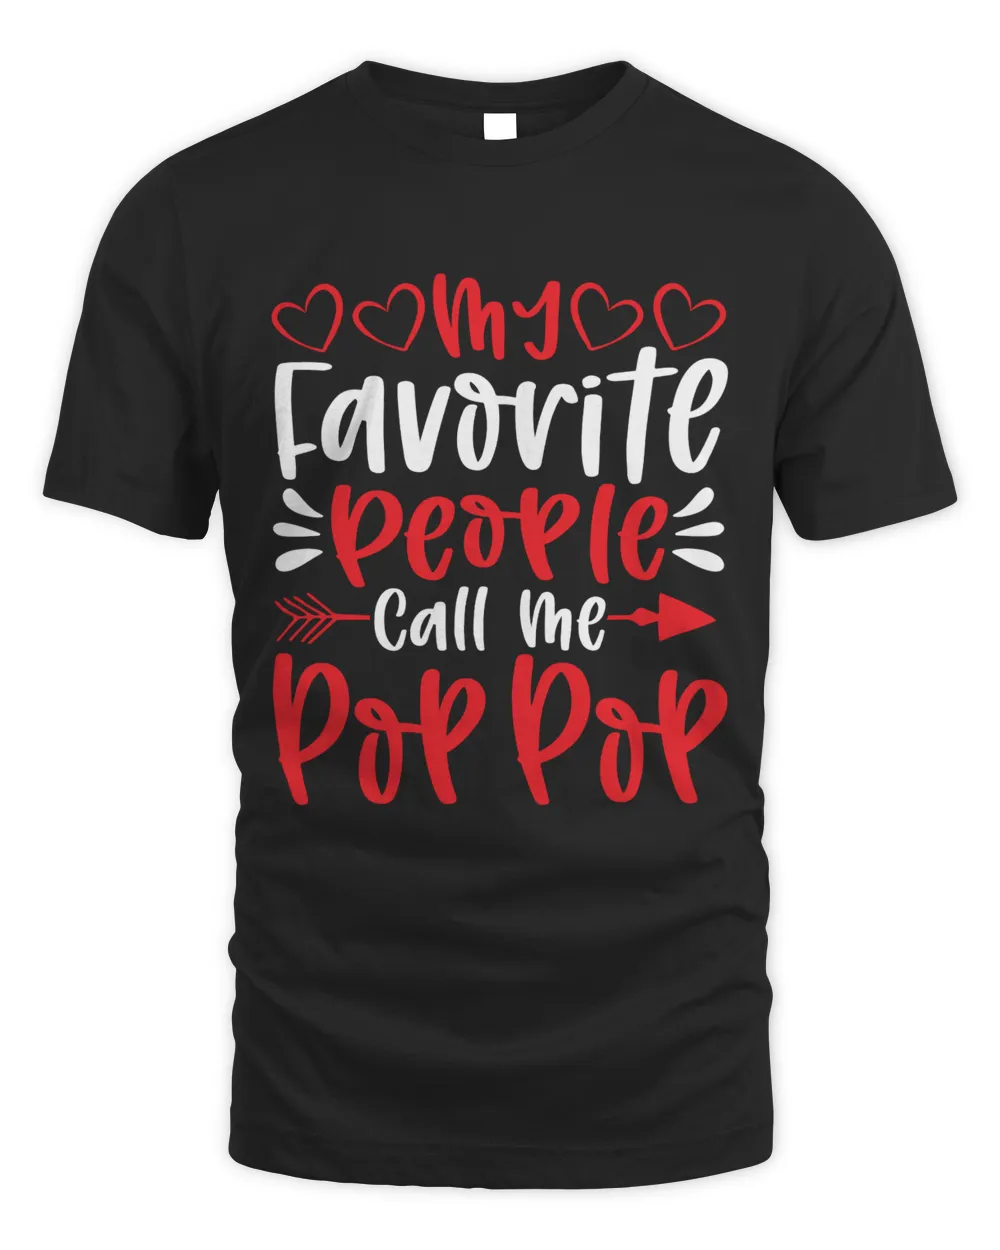 My favorite people call me pop pop